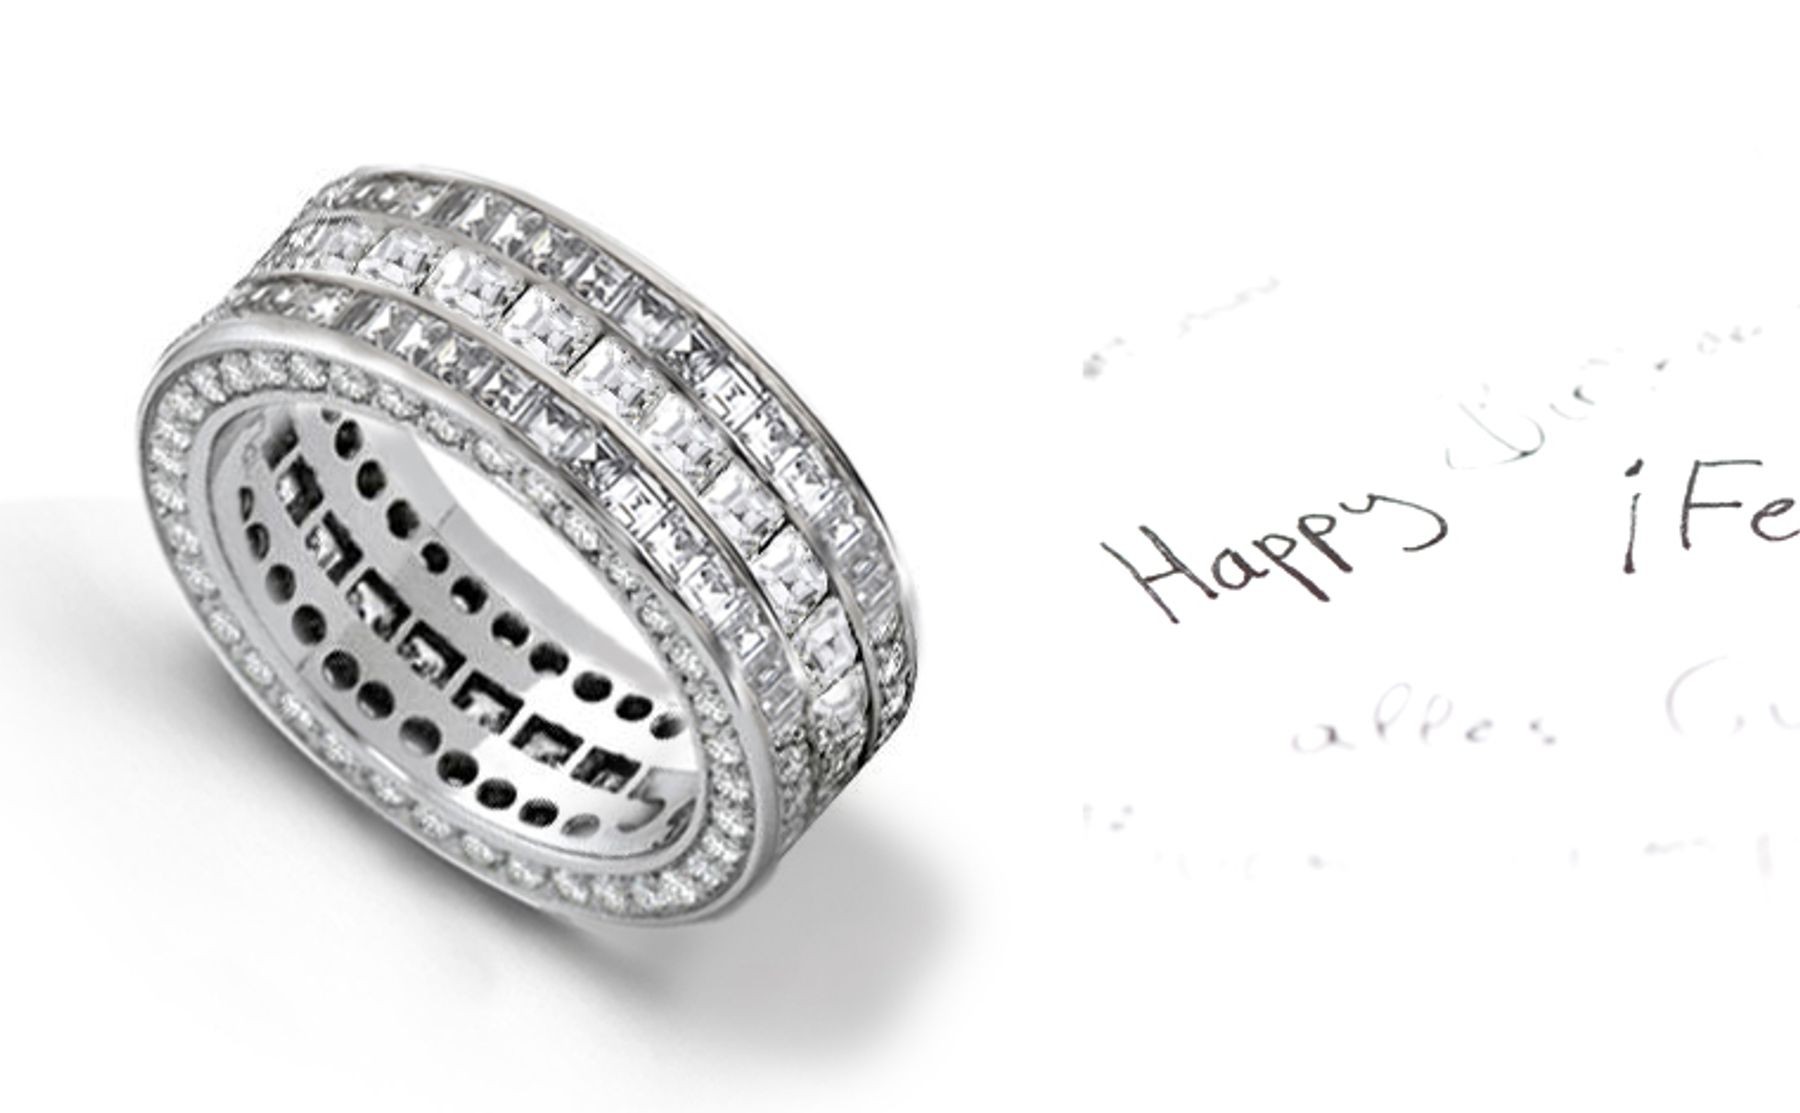 Exquisite: Diamond Eternity Ring with Diamonds in Harmony